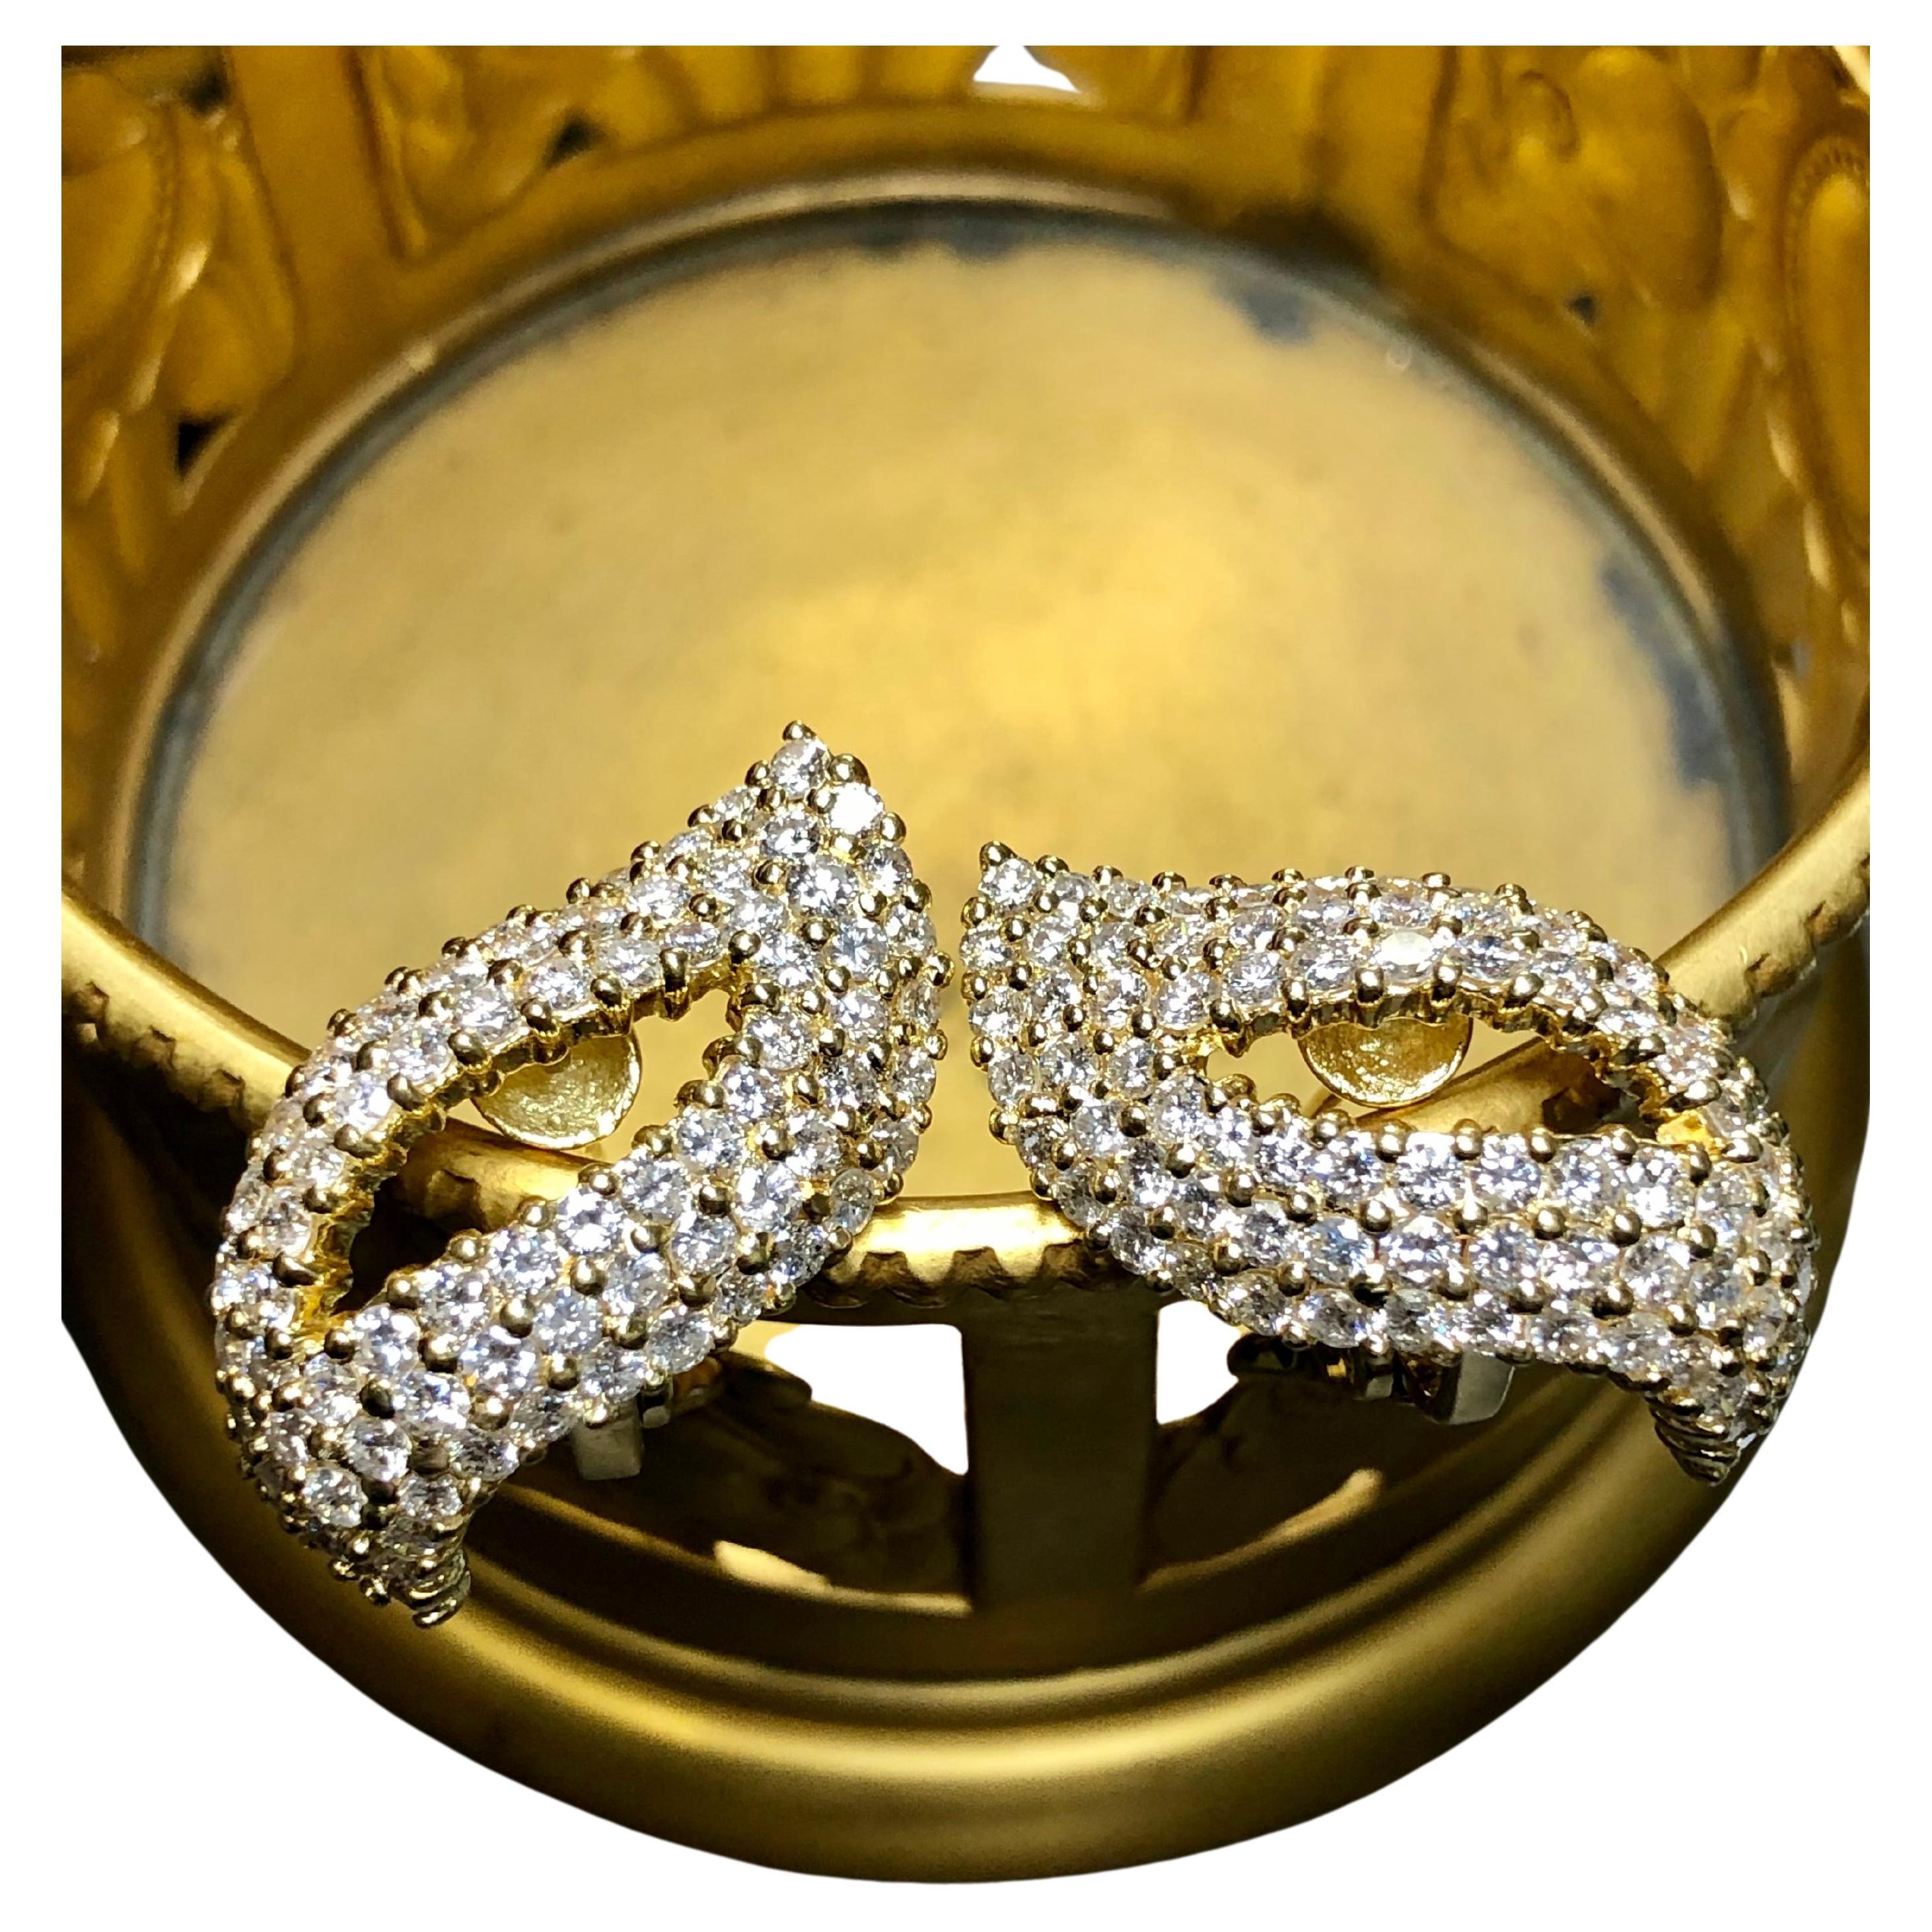 Une élégante paire d'Eleg en or jaune 18 carats sertie d'environ 6.50cttw de diamants ronds de couleur G-H et de pureté Si1-2. Elles sont percées de dos d'oméga.


Dimensions/Poids :

Les boucles d'oreilles mesurent 1,1